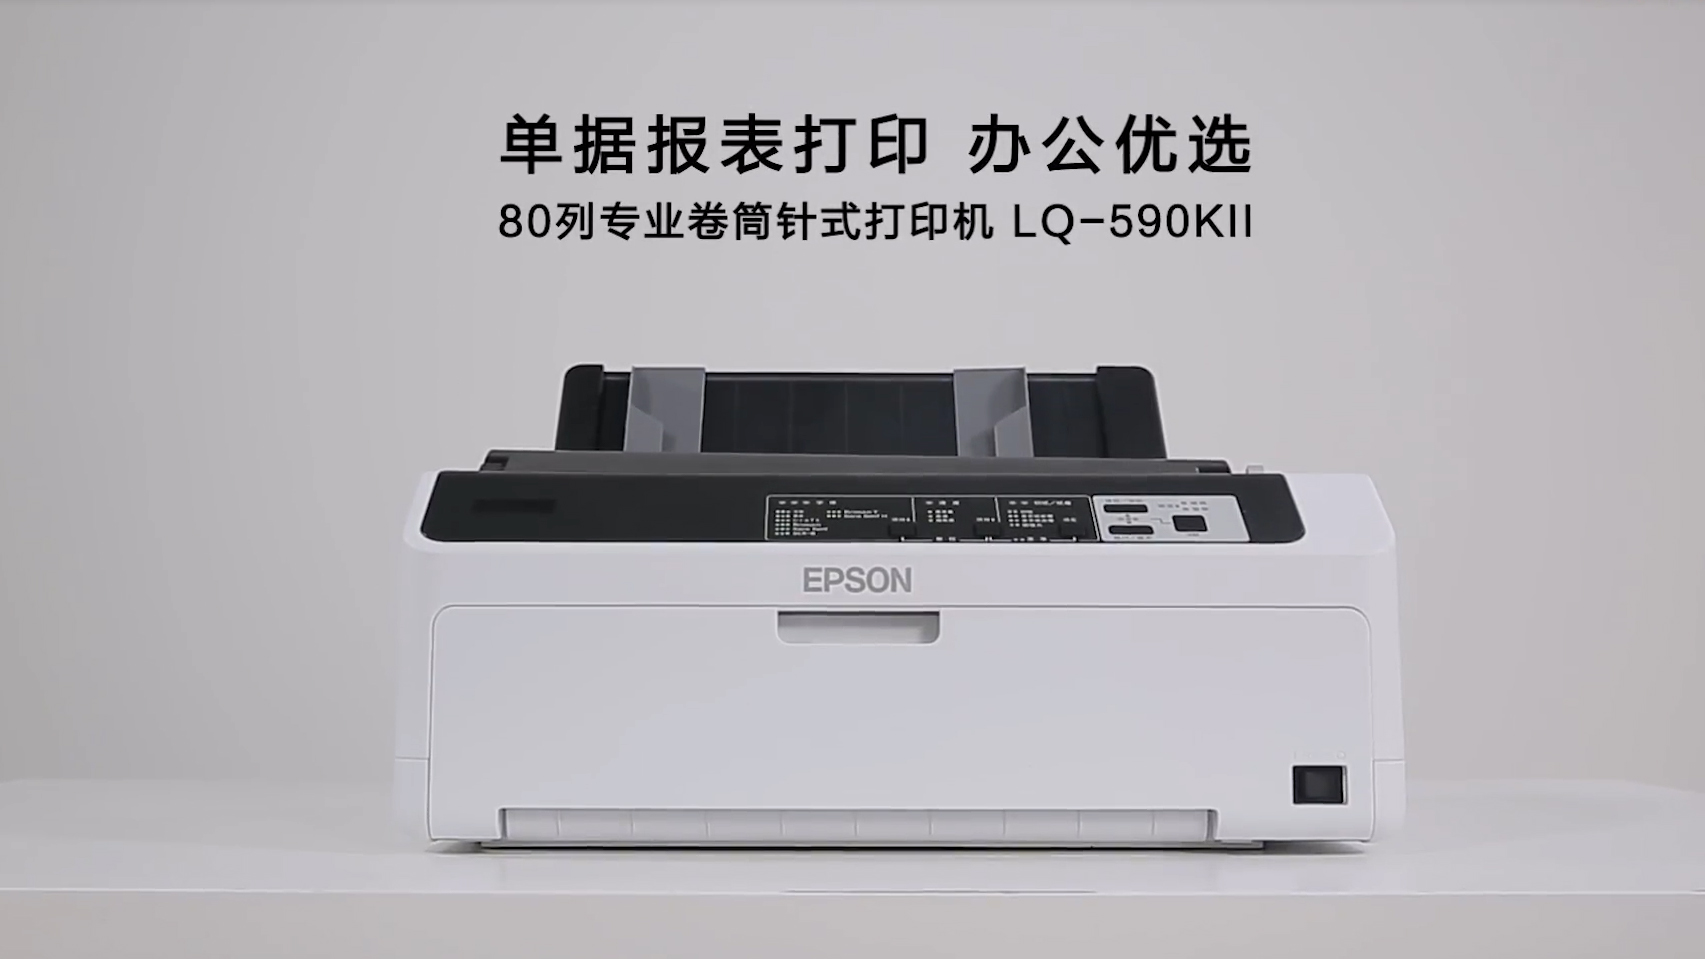 EPSON_PRODUCTS_Epson LQ-590KII